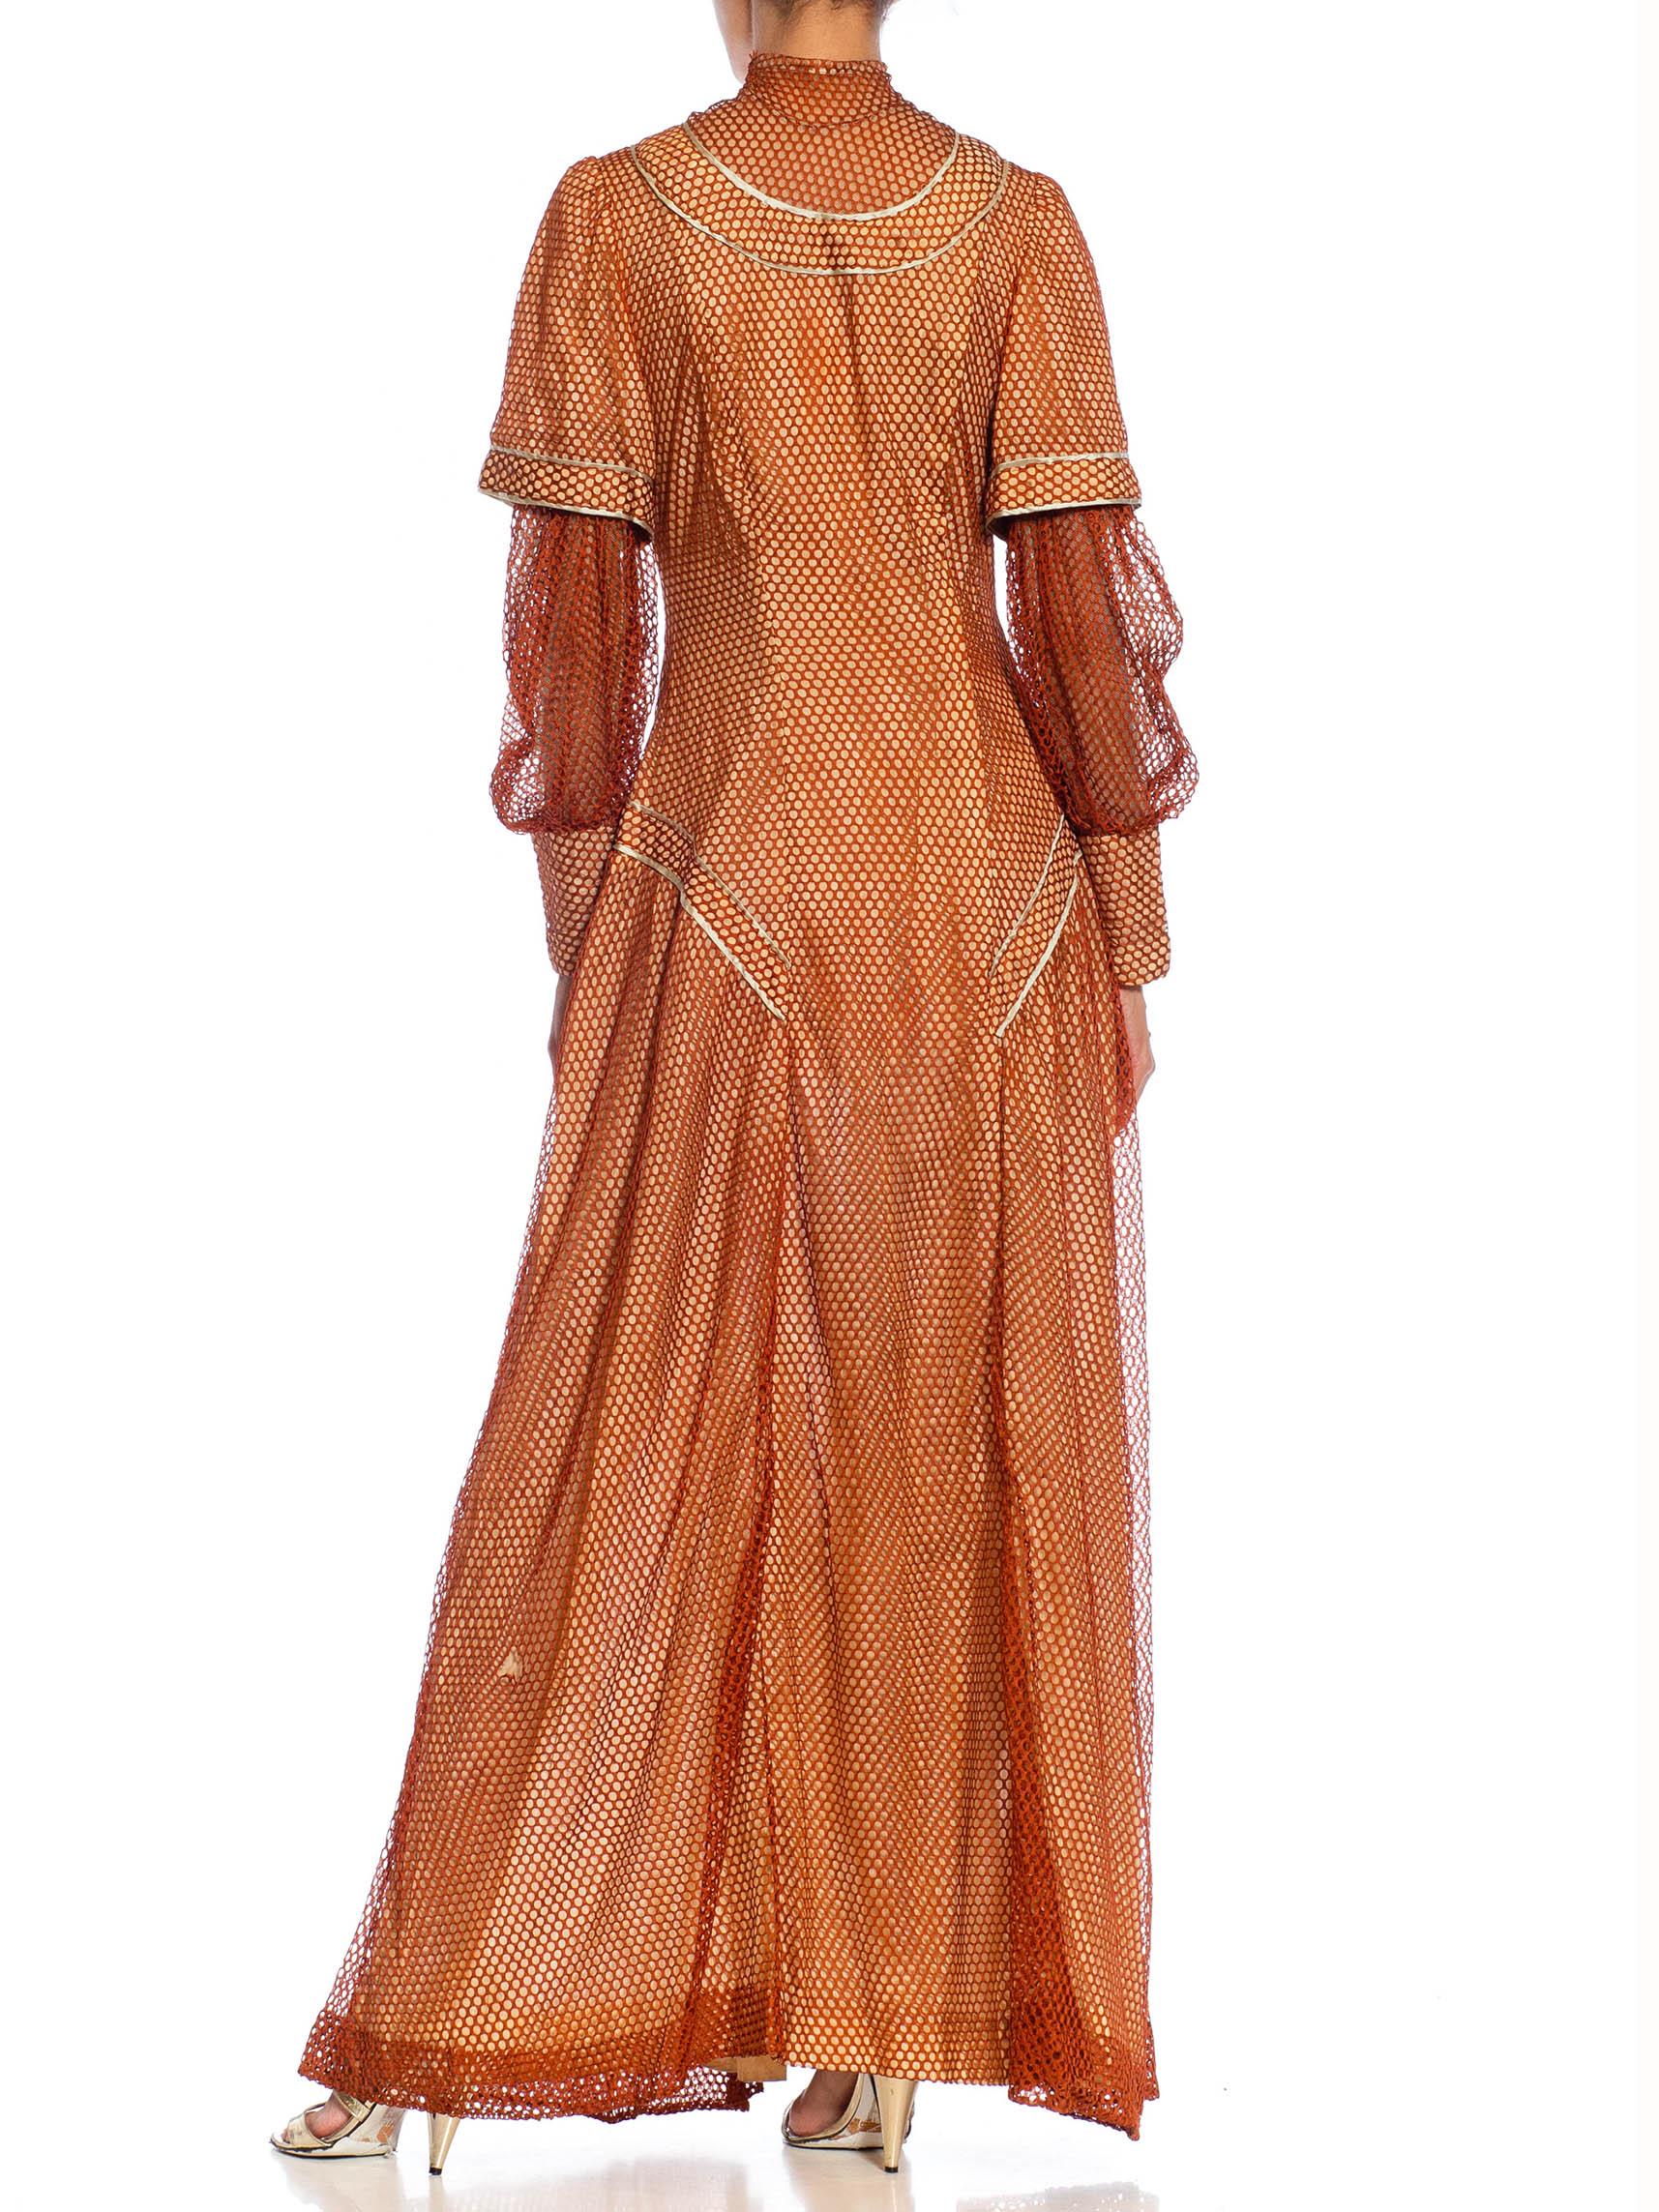 Robe édouardienne en maille de soie bronze sur soie rose pâle avec manches longues Excellent état - En vente à New York, NY